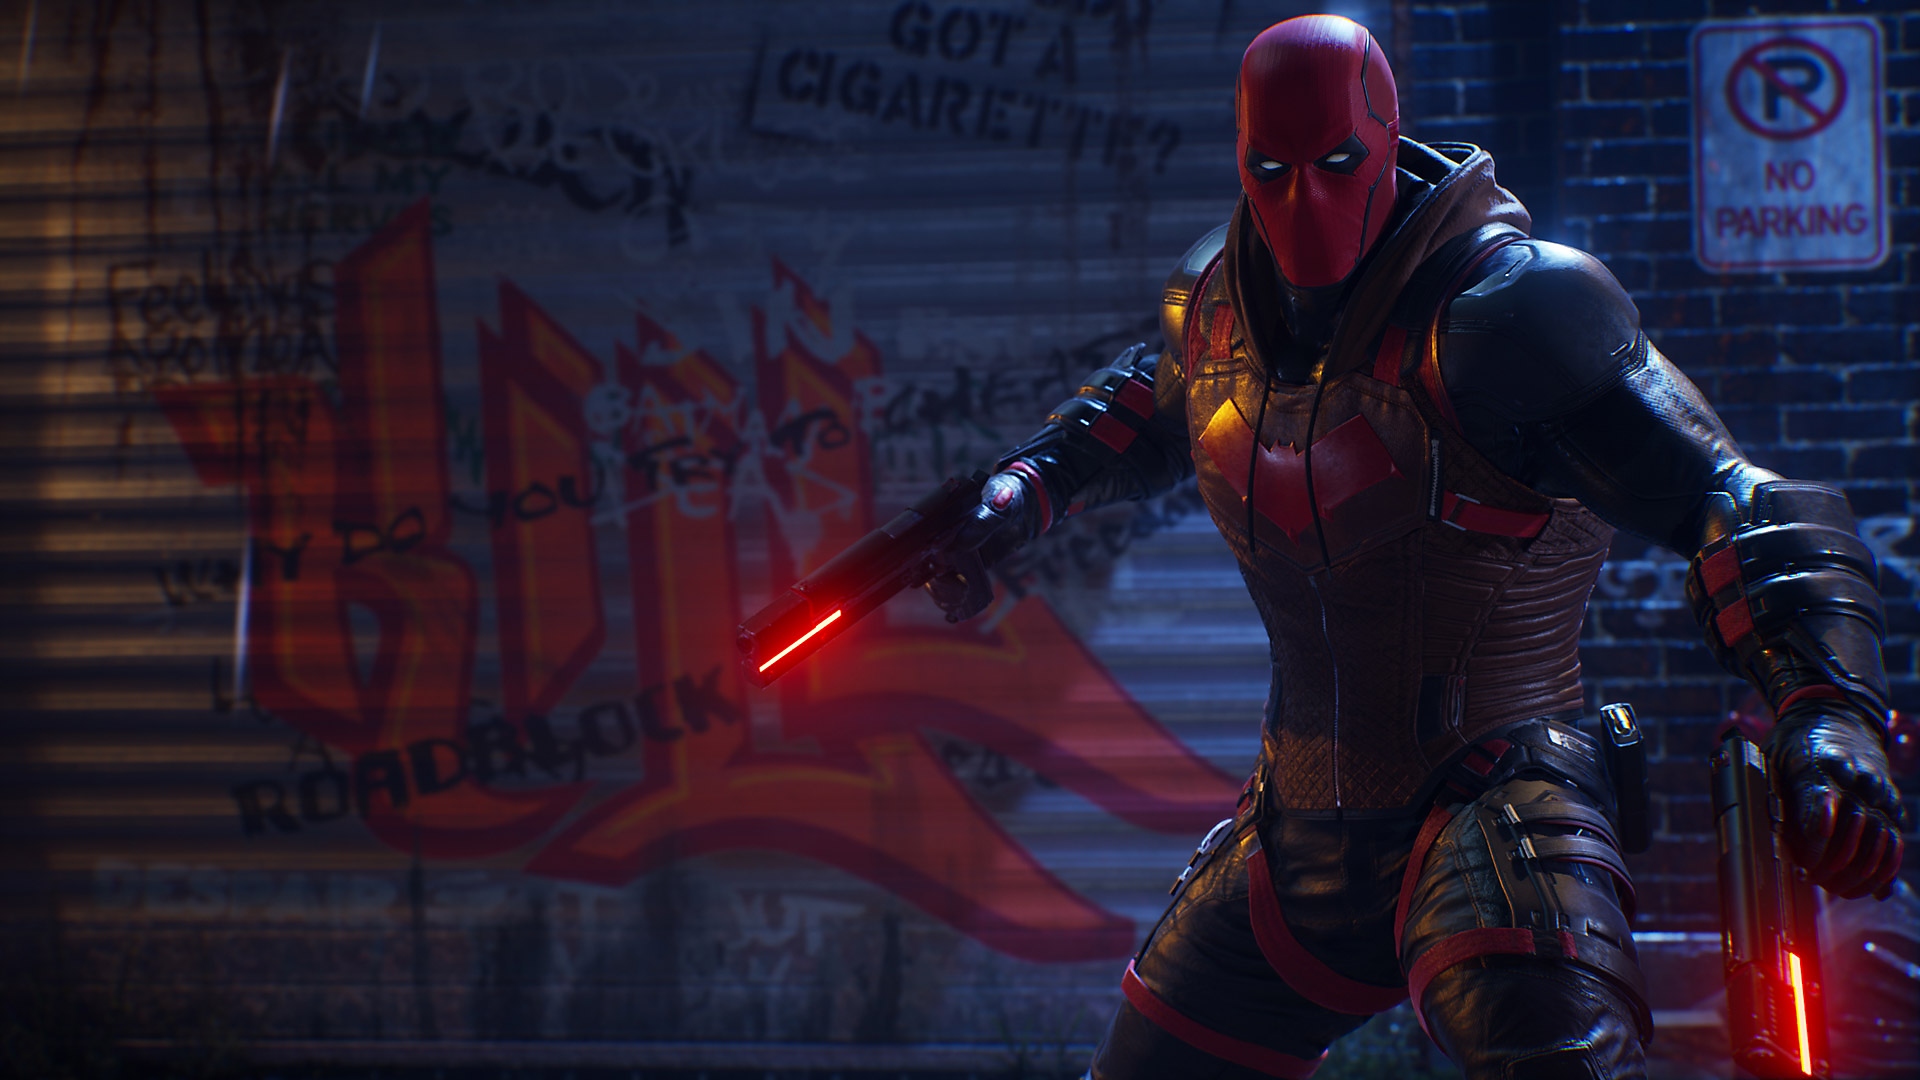 Gotham Knights – снимок экрана – Красный Колпак с оружием в руках